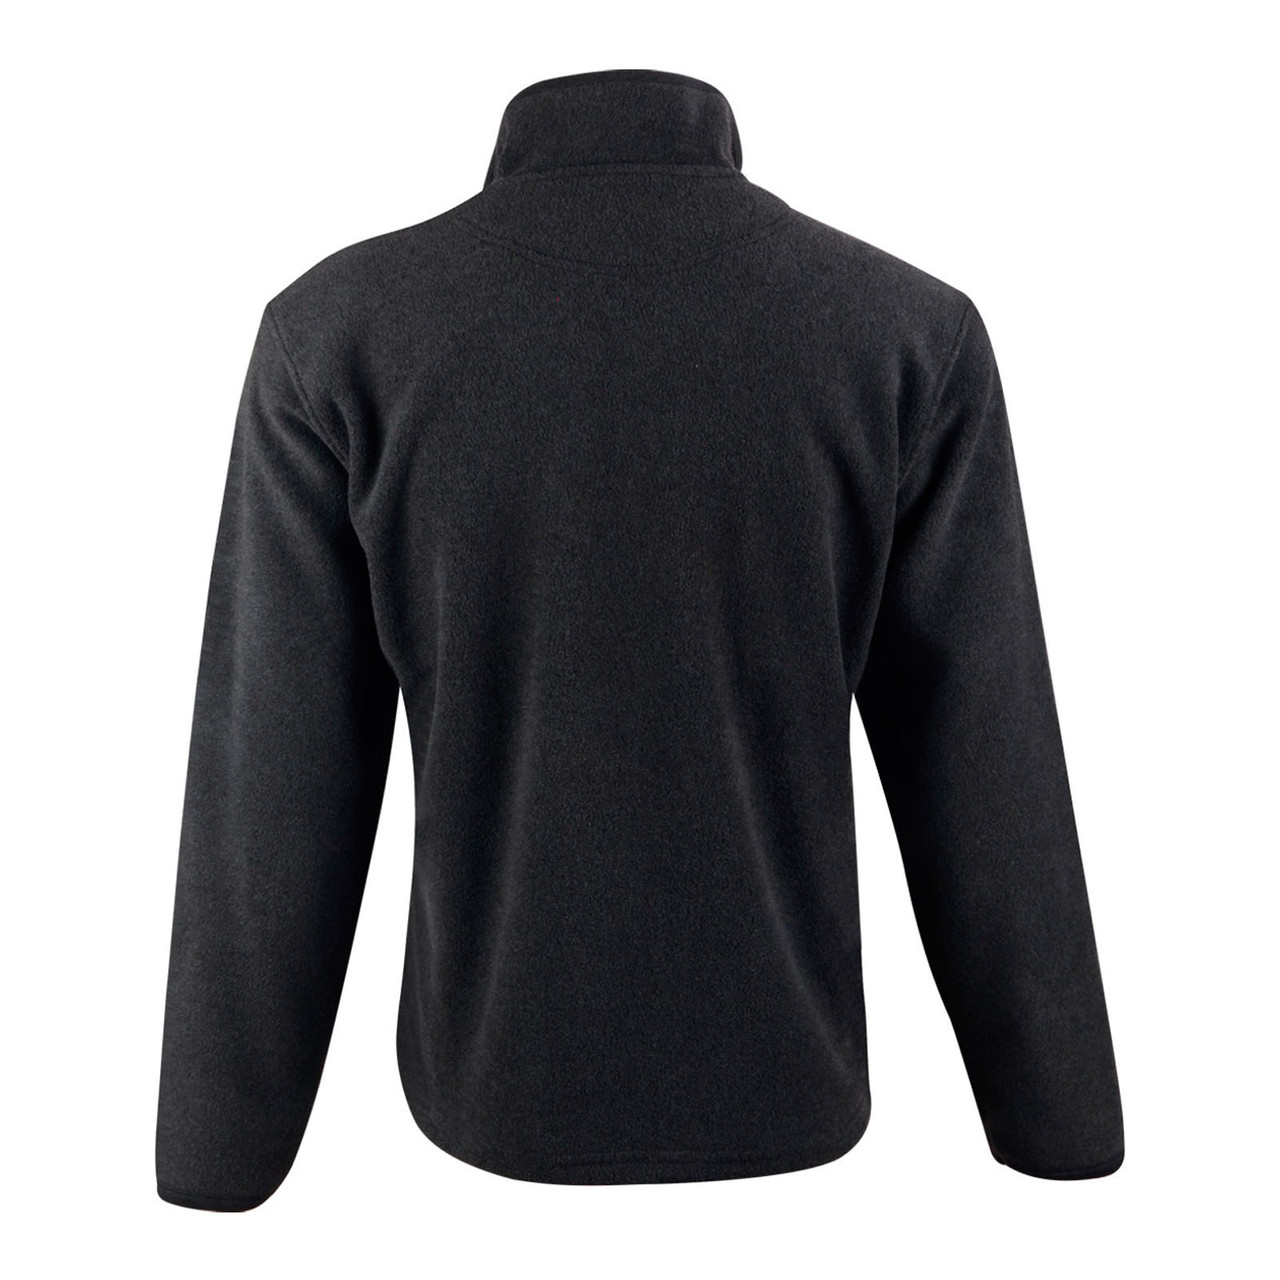 Unisex Half Zip Polar Fleece Pullover | Shop Winter Jumpers Online